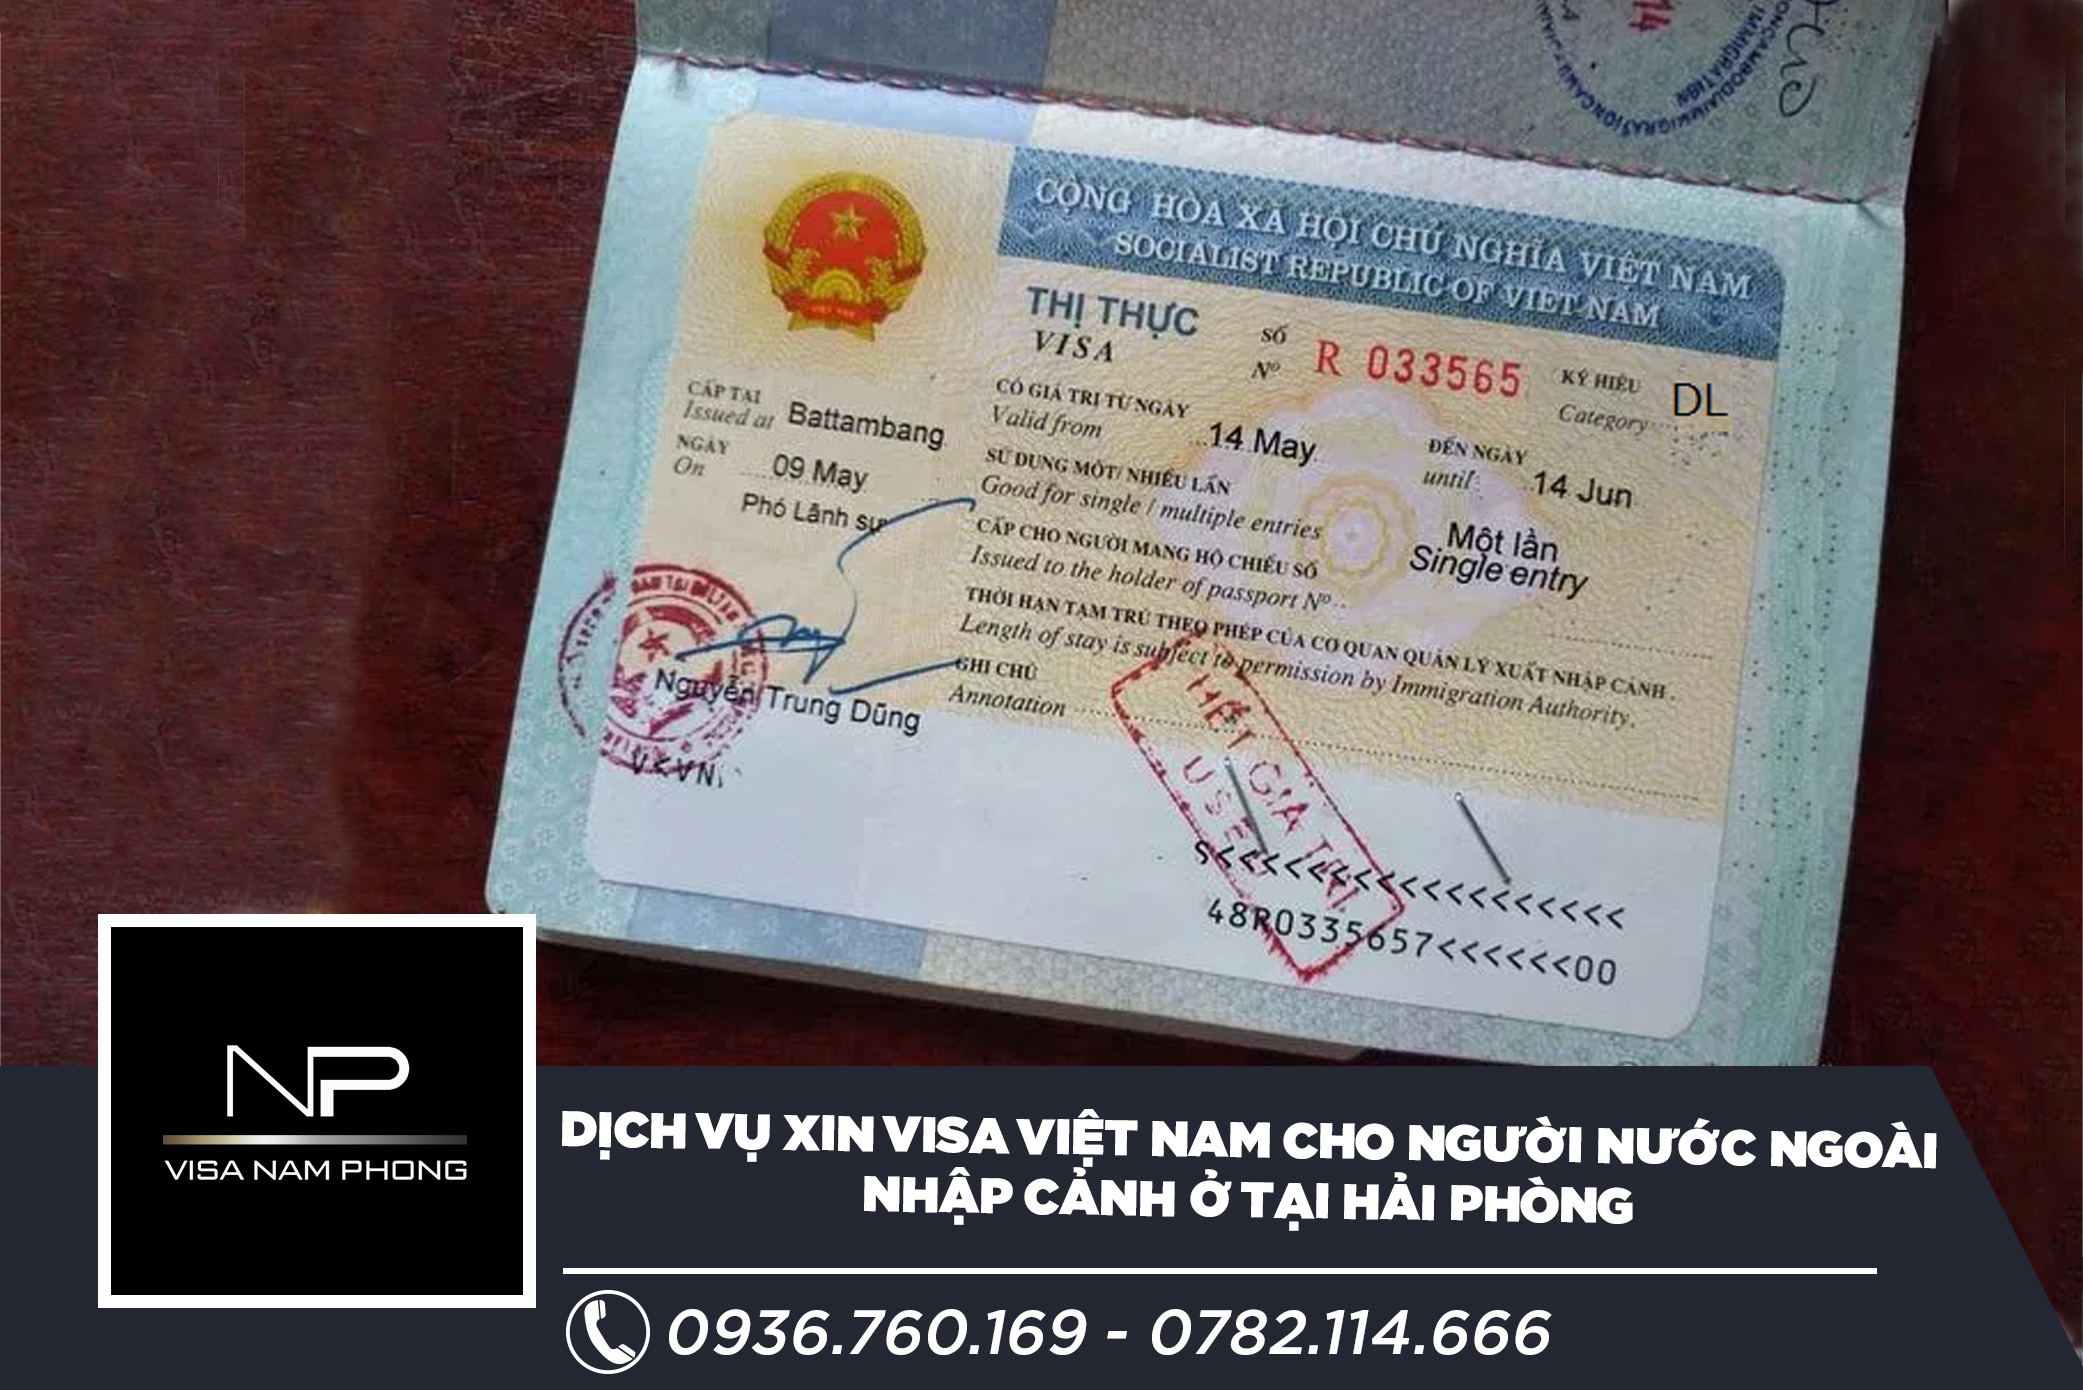 Dịch vụ xin visa Việt Nam cho người nước ngoài nhập cảnh ở tại Hải Phòng